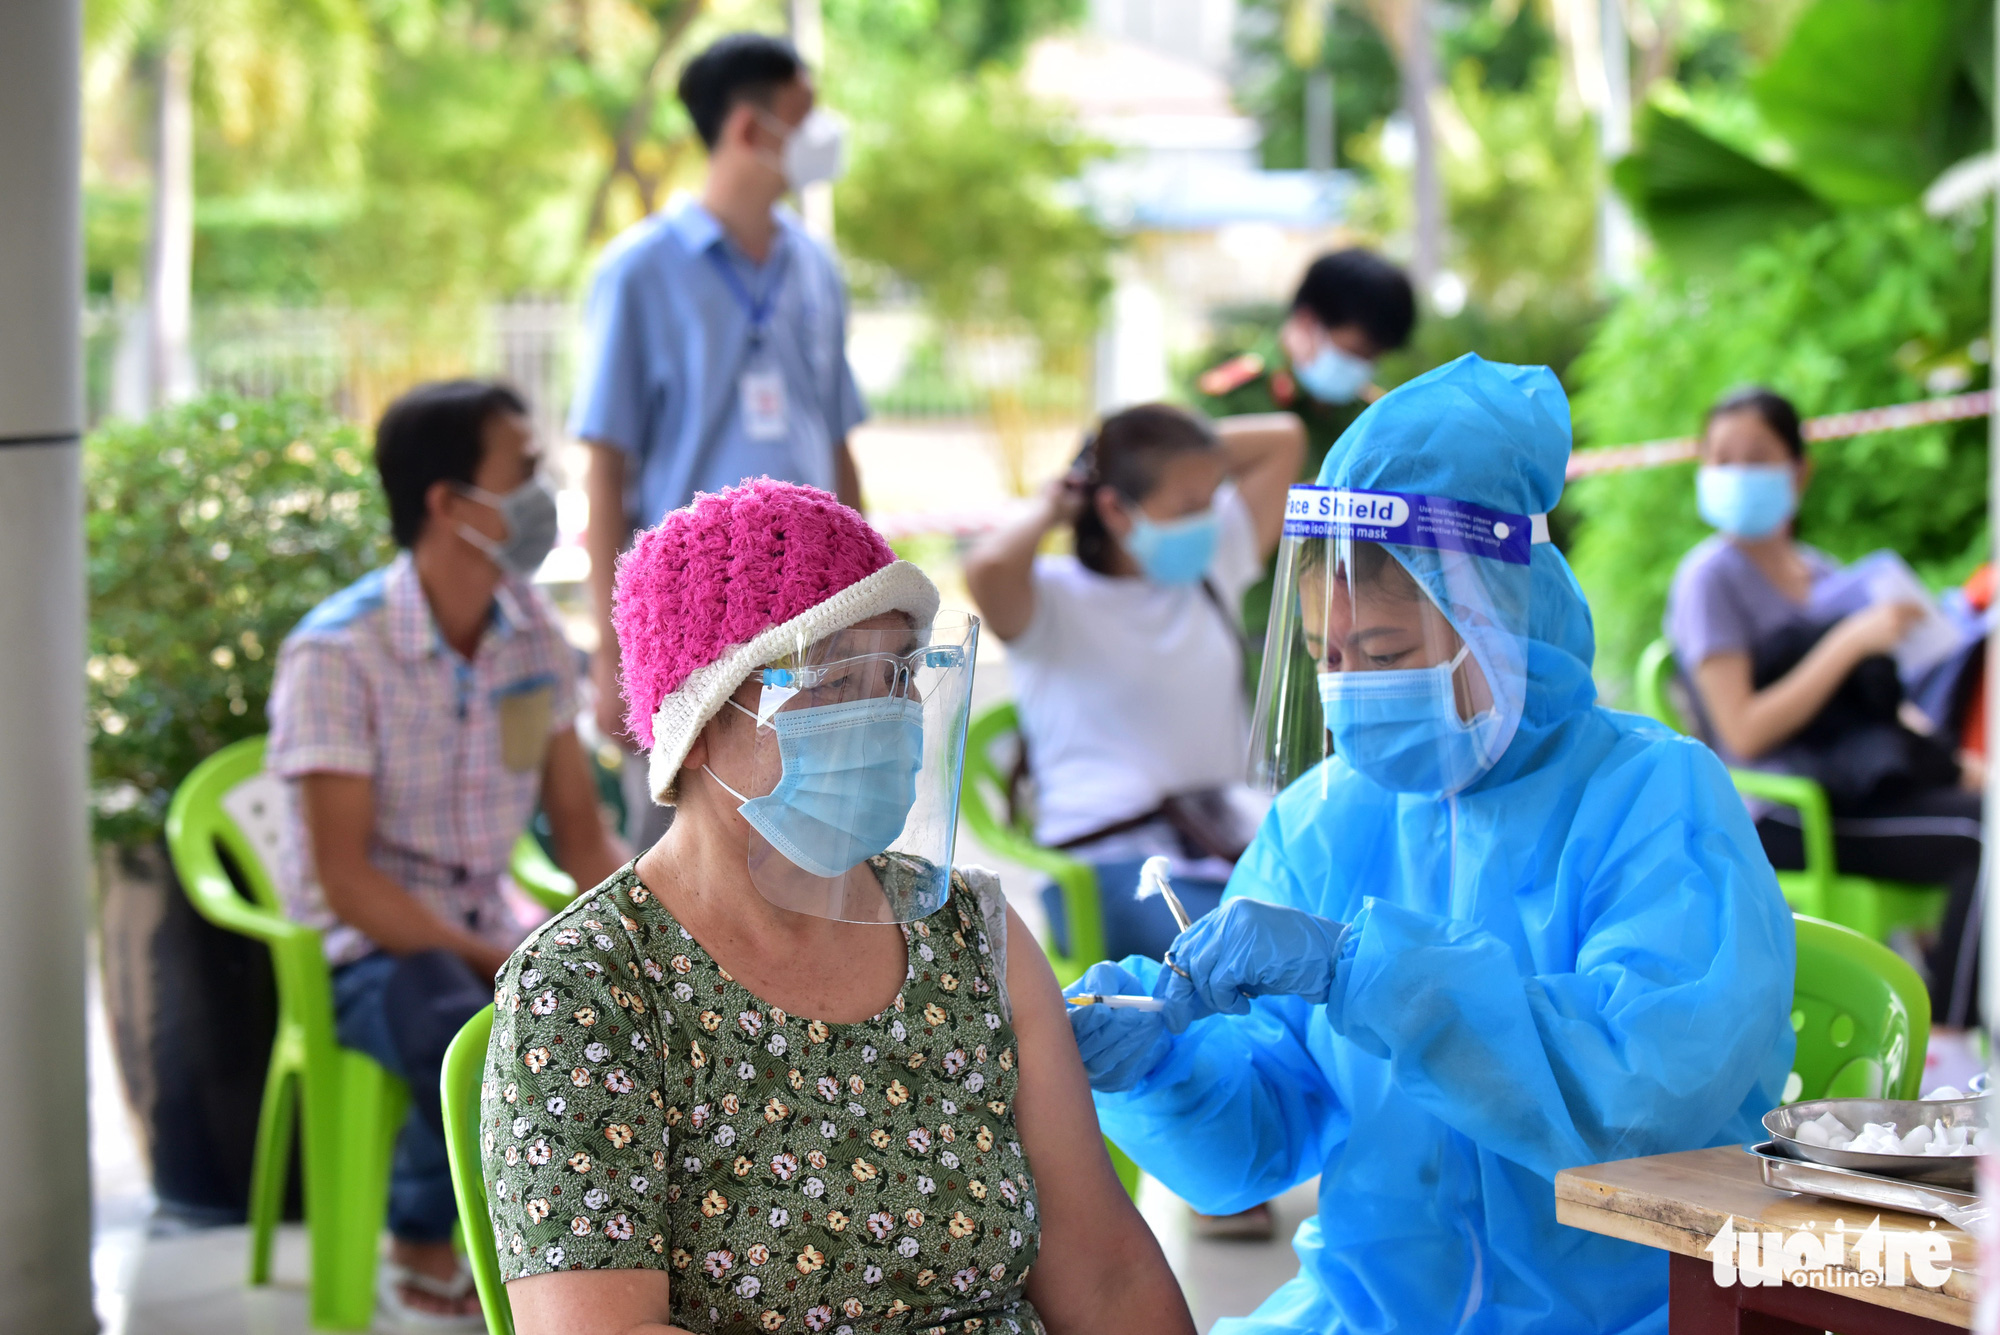 Over 3 million COVID-19 vaccine doses allocated to Ho Chi Minh City so far